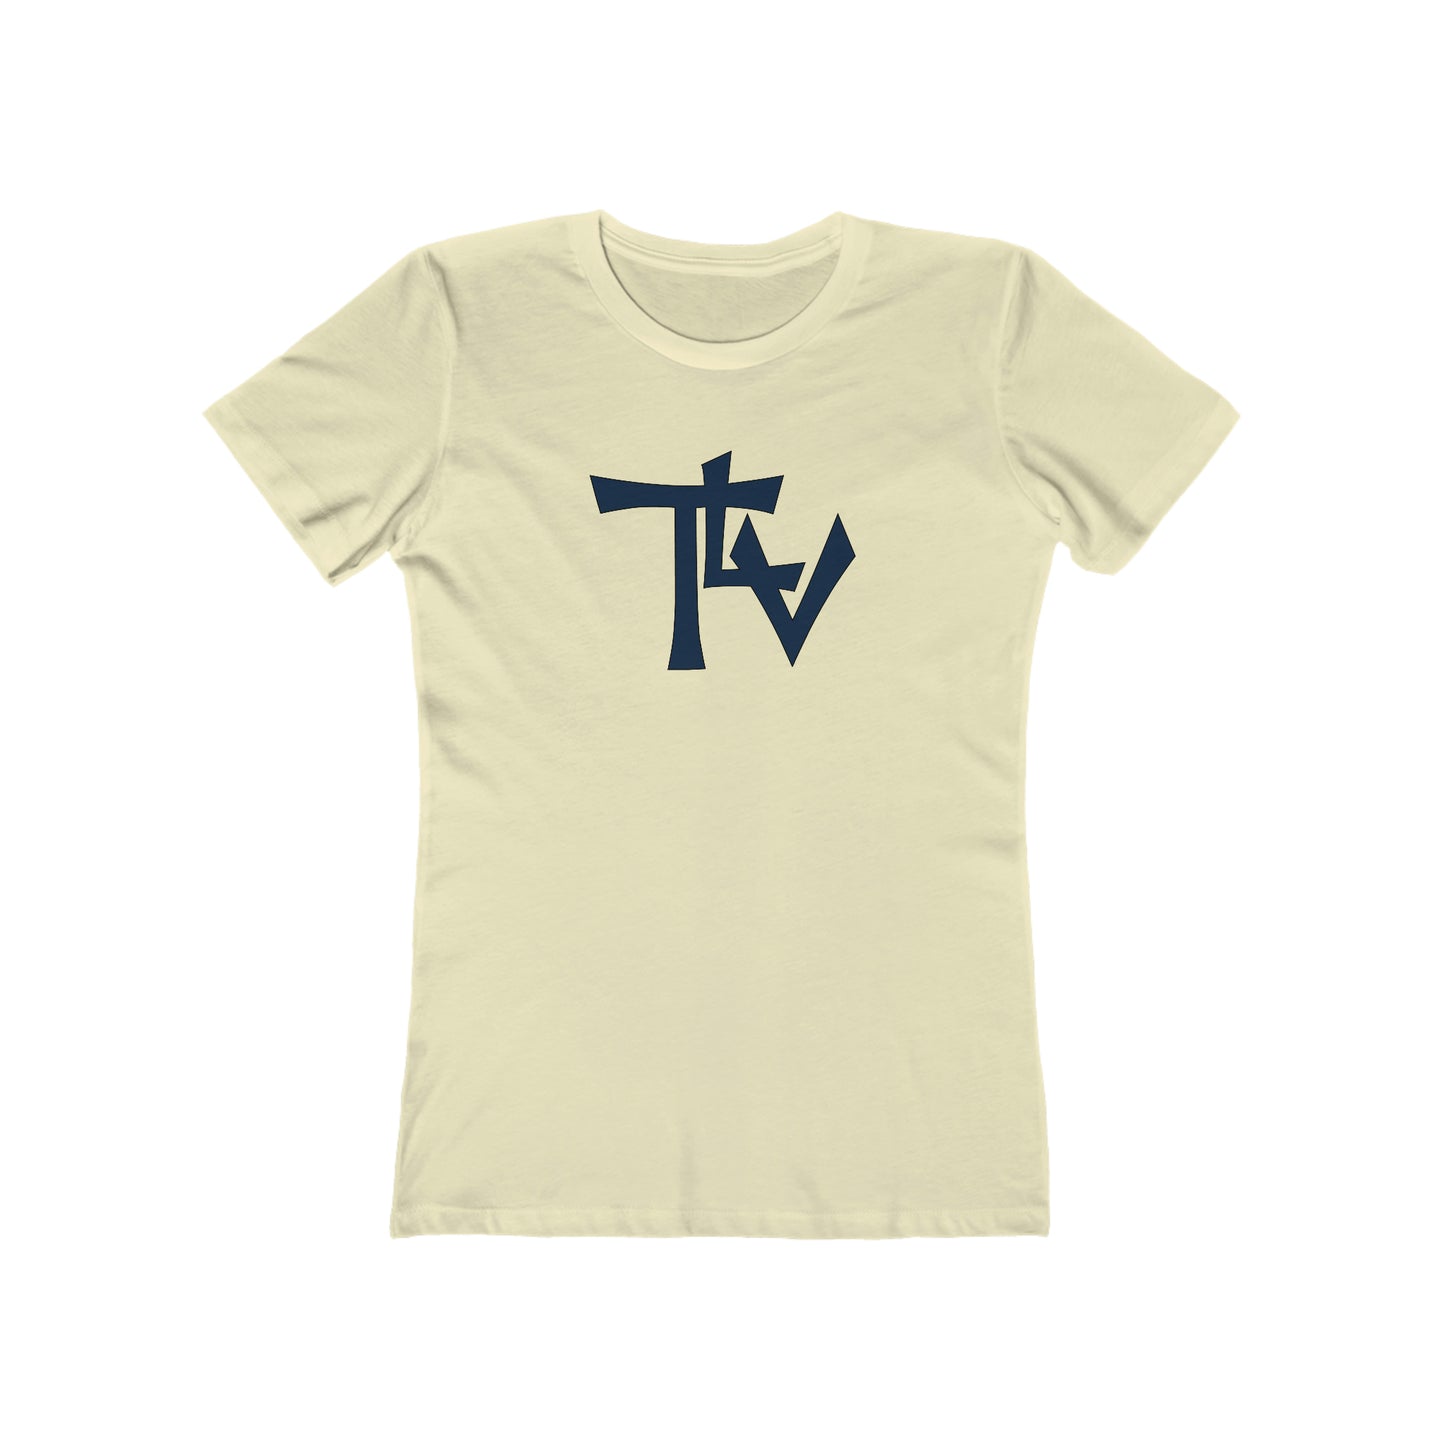 Tel Aviv - Women's T-Shirt